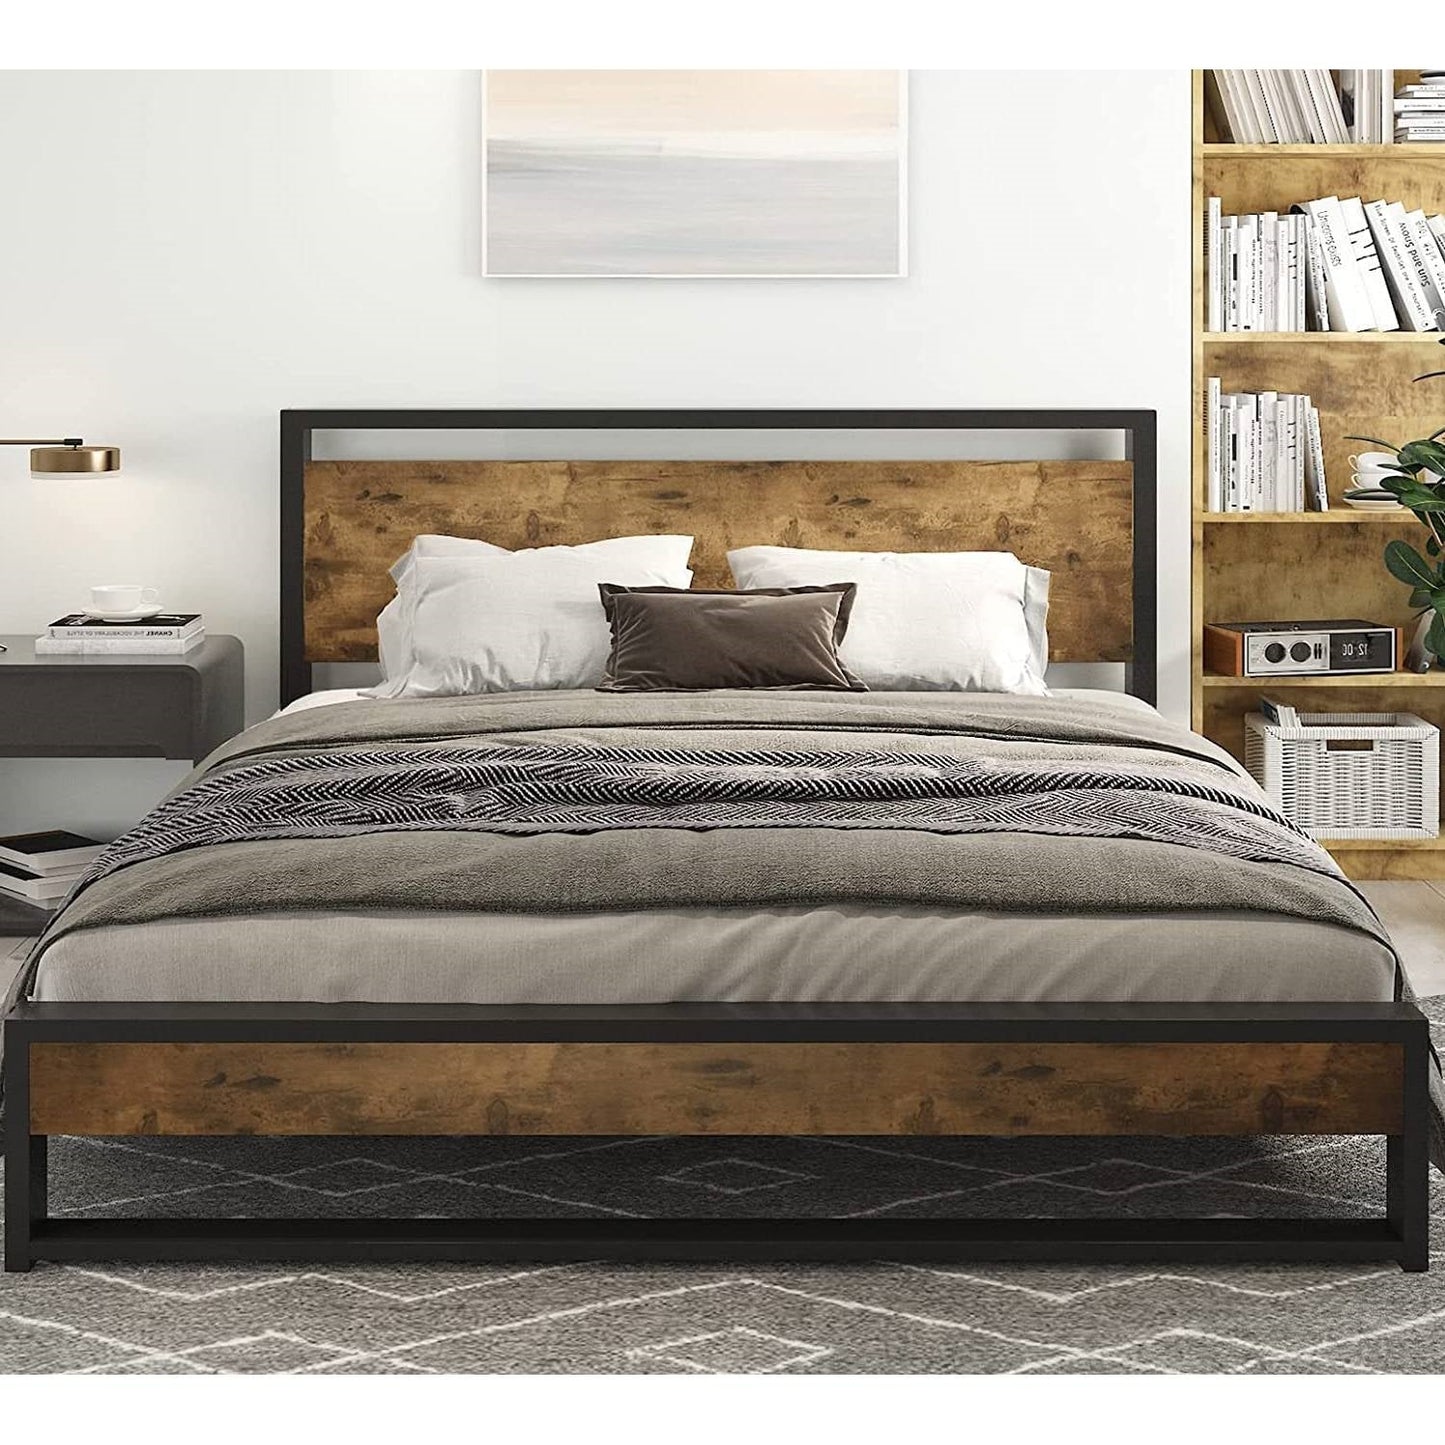 Bedroom > Bed Frames > Platform Beds - Queen Modern Farmhouse Platform Bed Frame With Wood Panel Headboard Footboard